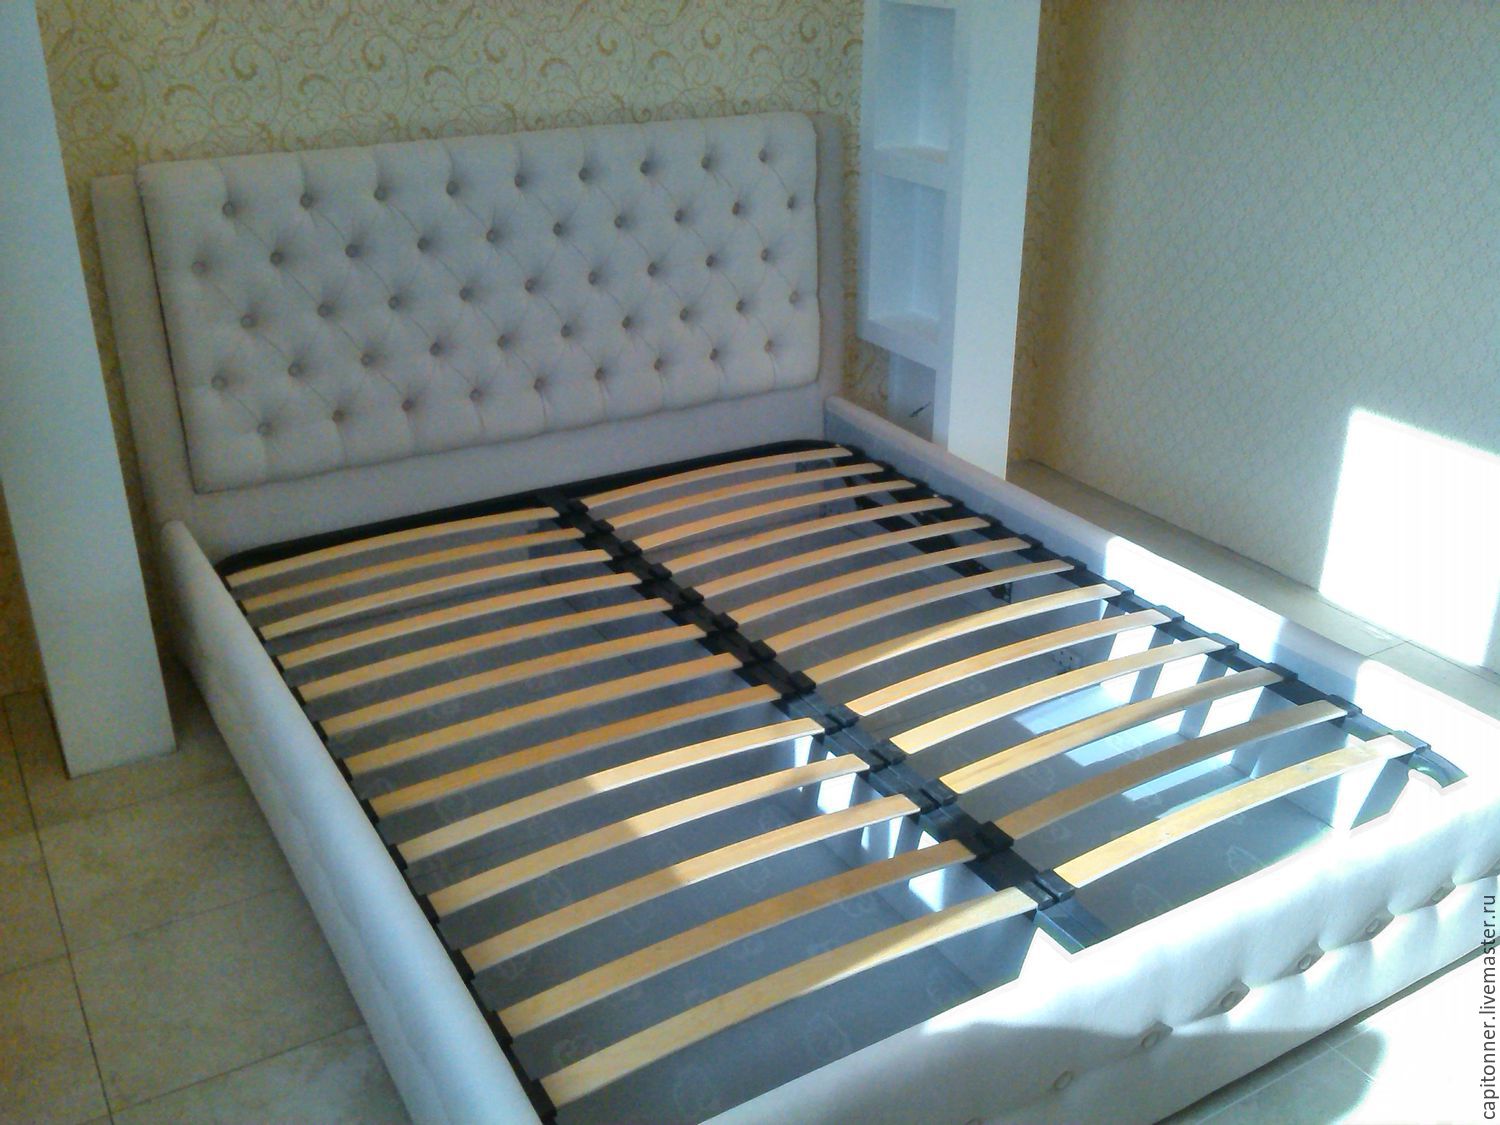 Кровать пенза каталог. Кроватная стяжка Optimus. Кровать с каретной стяжкой. Каретная стяжка кровать с изголовьем. Кровати Пенза.